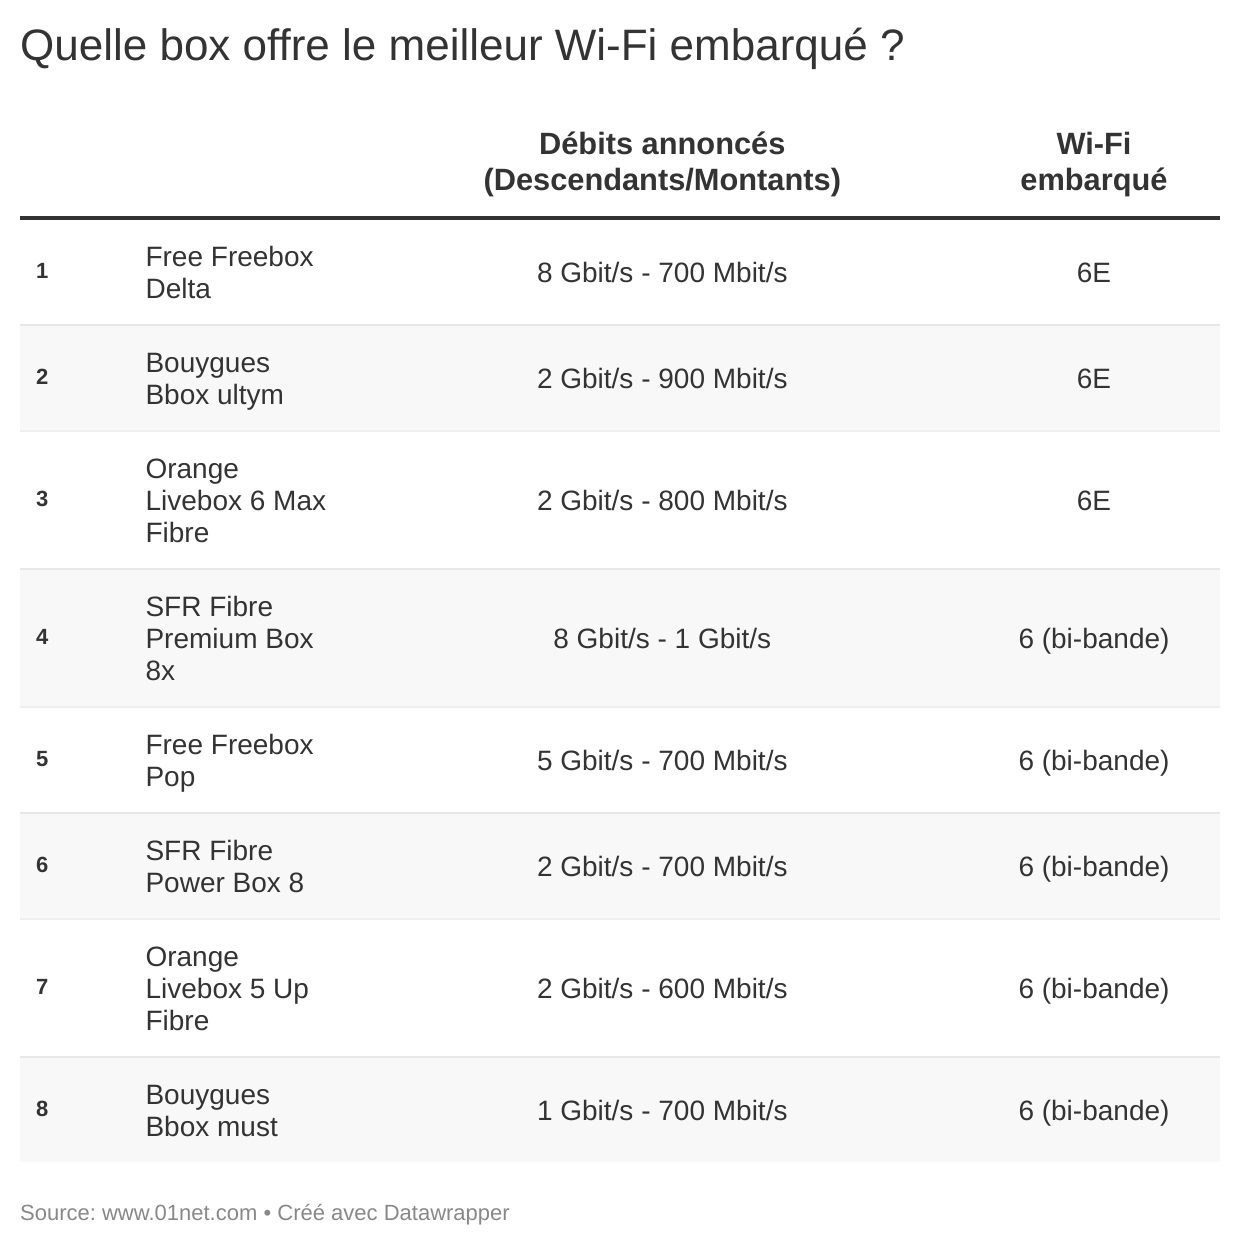 Quelle box Fibre a le plus de potentiel en Wi-Fi ?